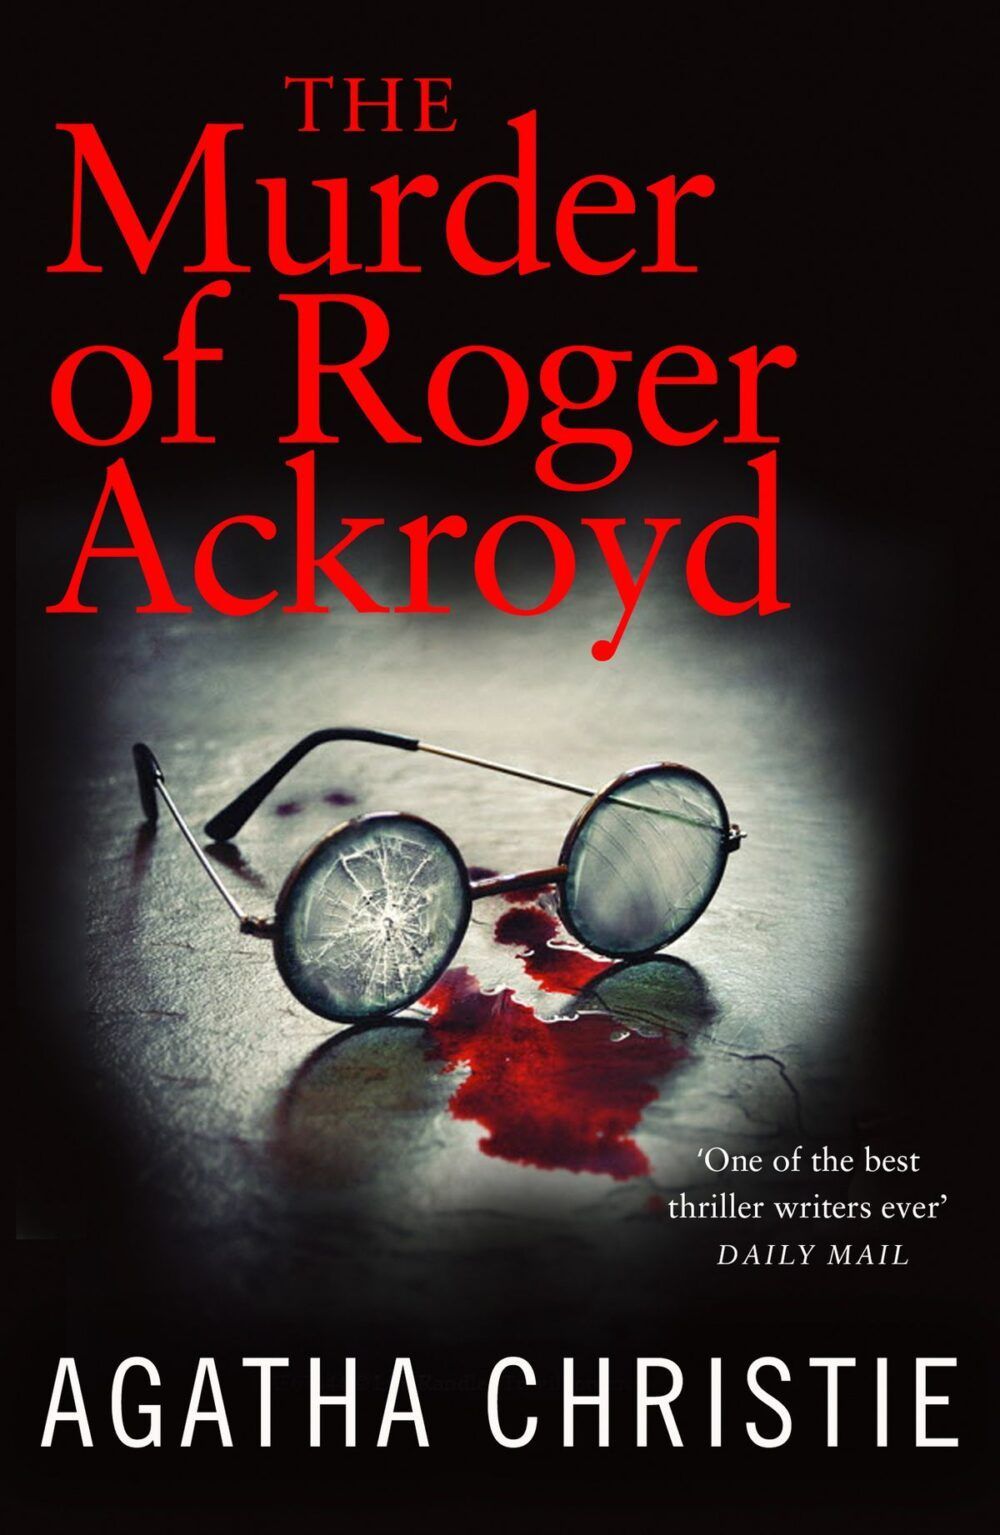 bia sach the murder of roger ackroyd e1583588695464 - Agatha Christie: “Cơn sóng lớn” của dòng truyện trinh thám